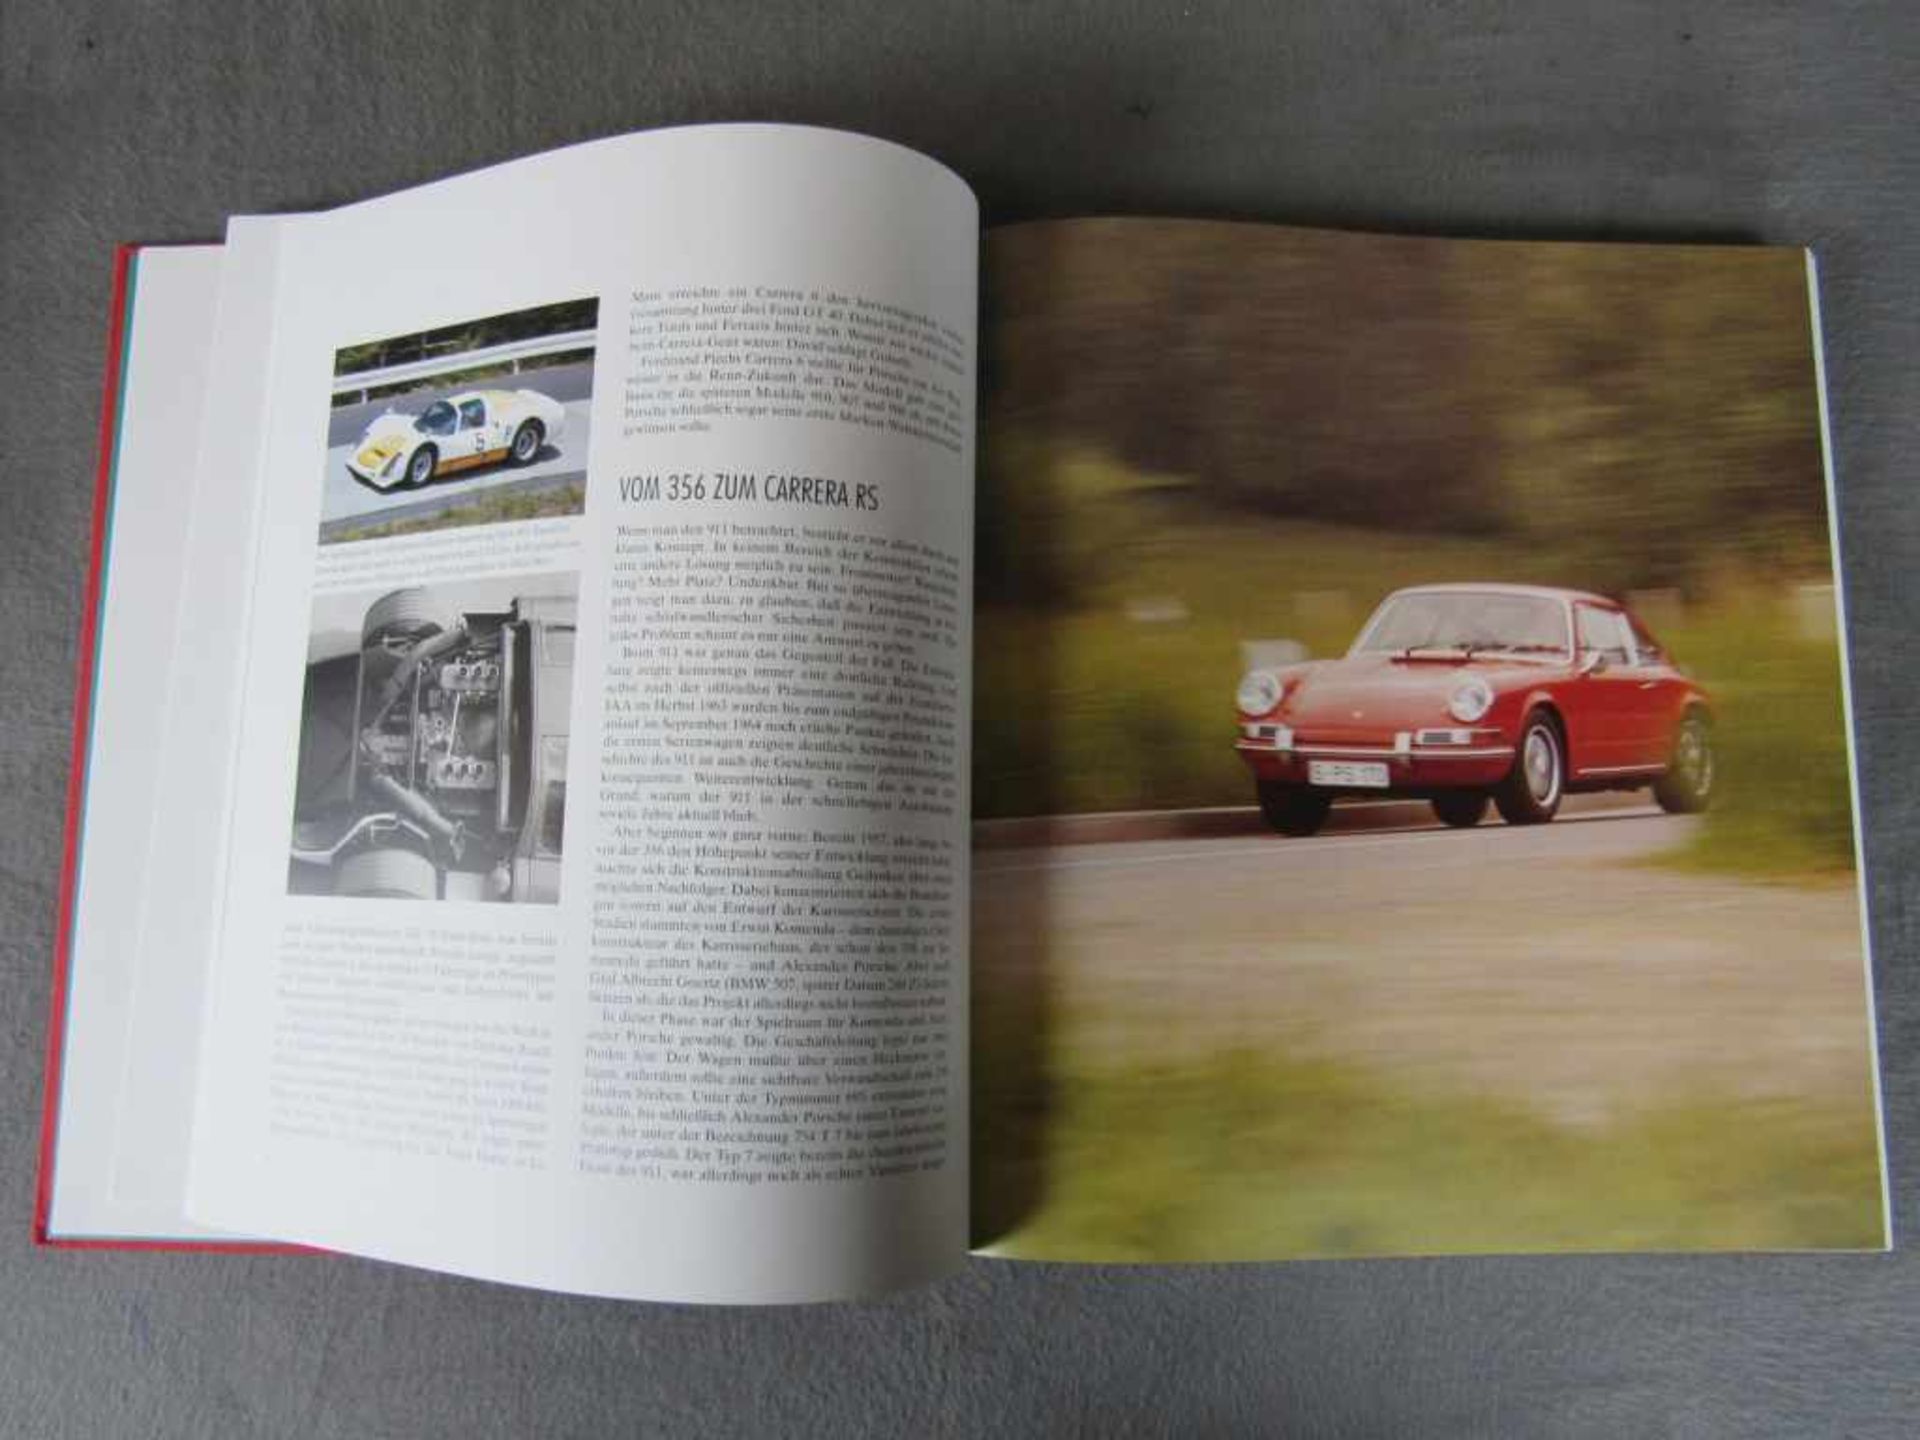 Sehr seltenes Porsche Carrera RS Buch limitierte Auflage nummeriert Dr. Thomas Gruber und Dr. Georg, - Image 3 of 8